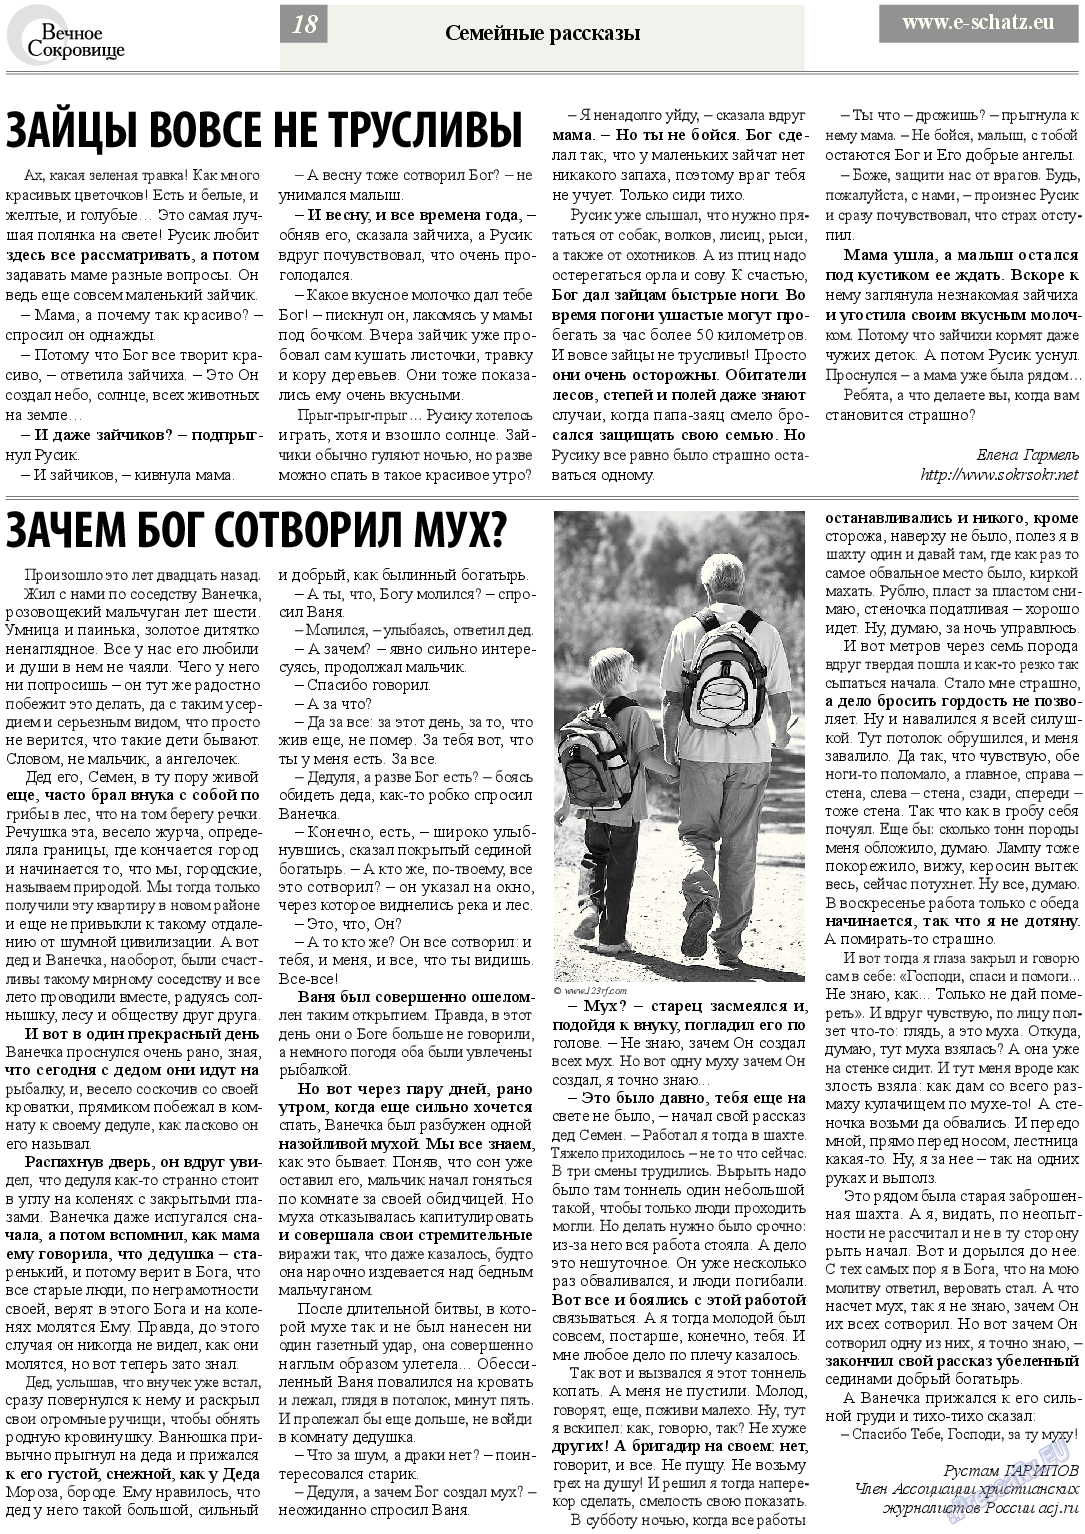 Вечное сокровище (газета). 2013 год, номер 4, стр. 18